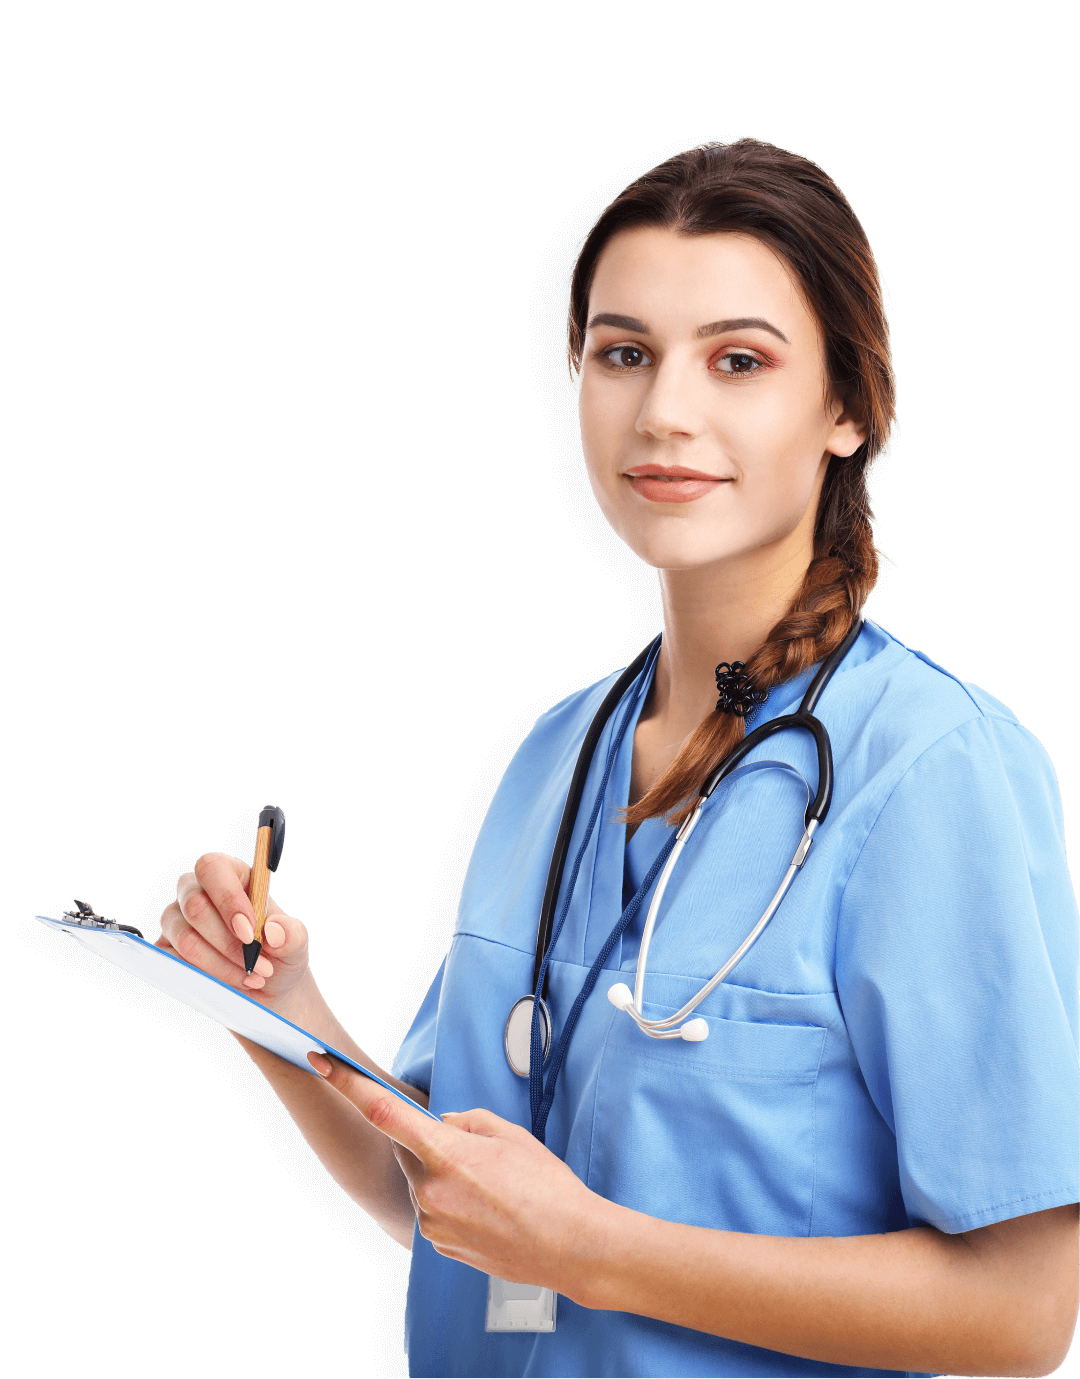 Nurse-Case Management professional